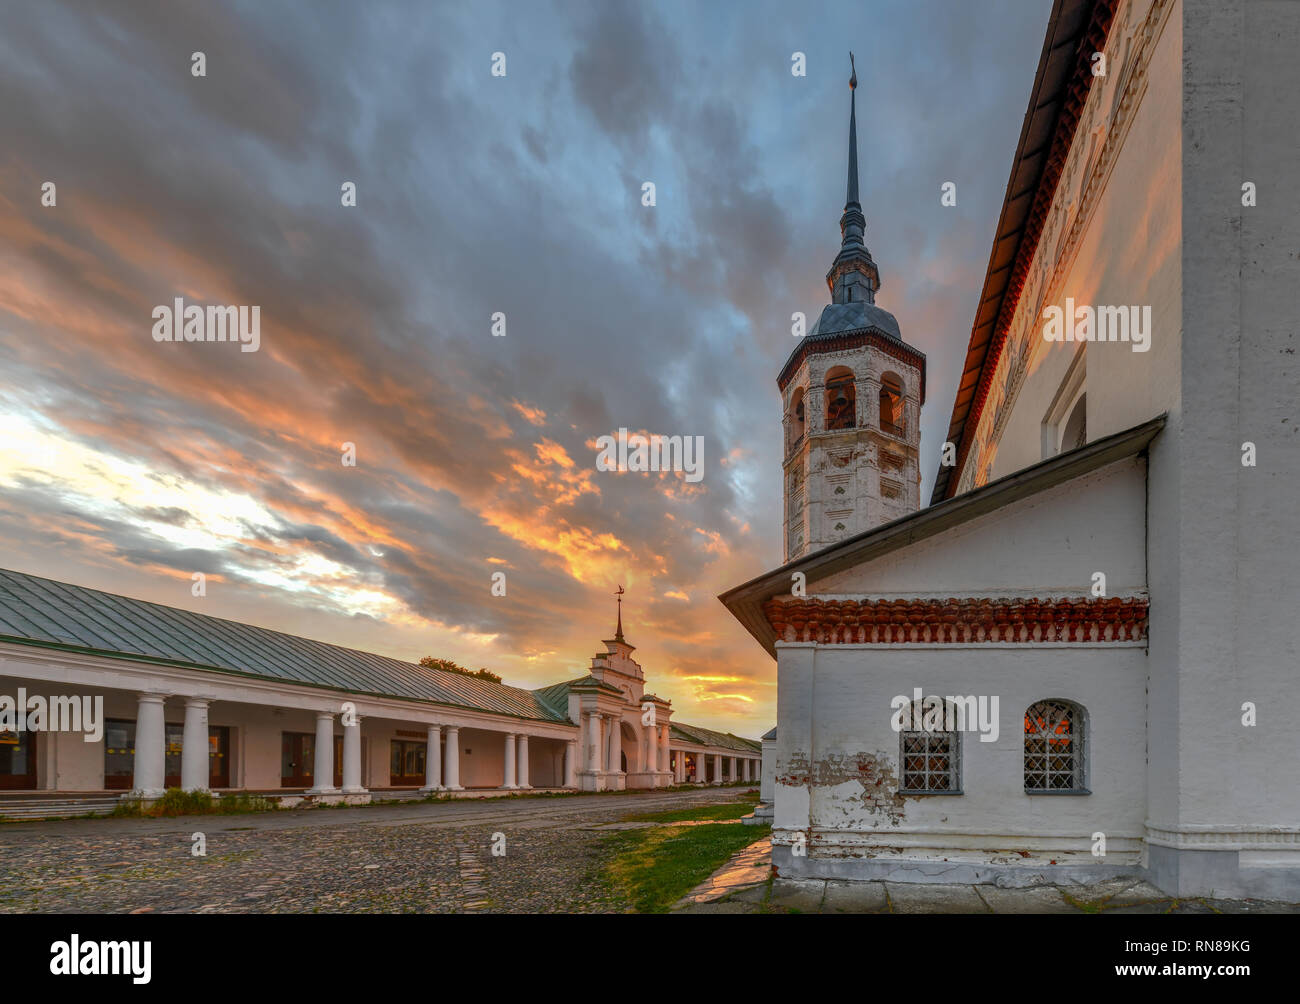 Chiesa di icona di Nostra Signora di Smolensk a Suzdal'. Suzdal è una famosa attrazione turistica e parte dell'anello d'oro della Russia. Foto Stock